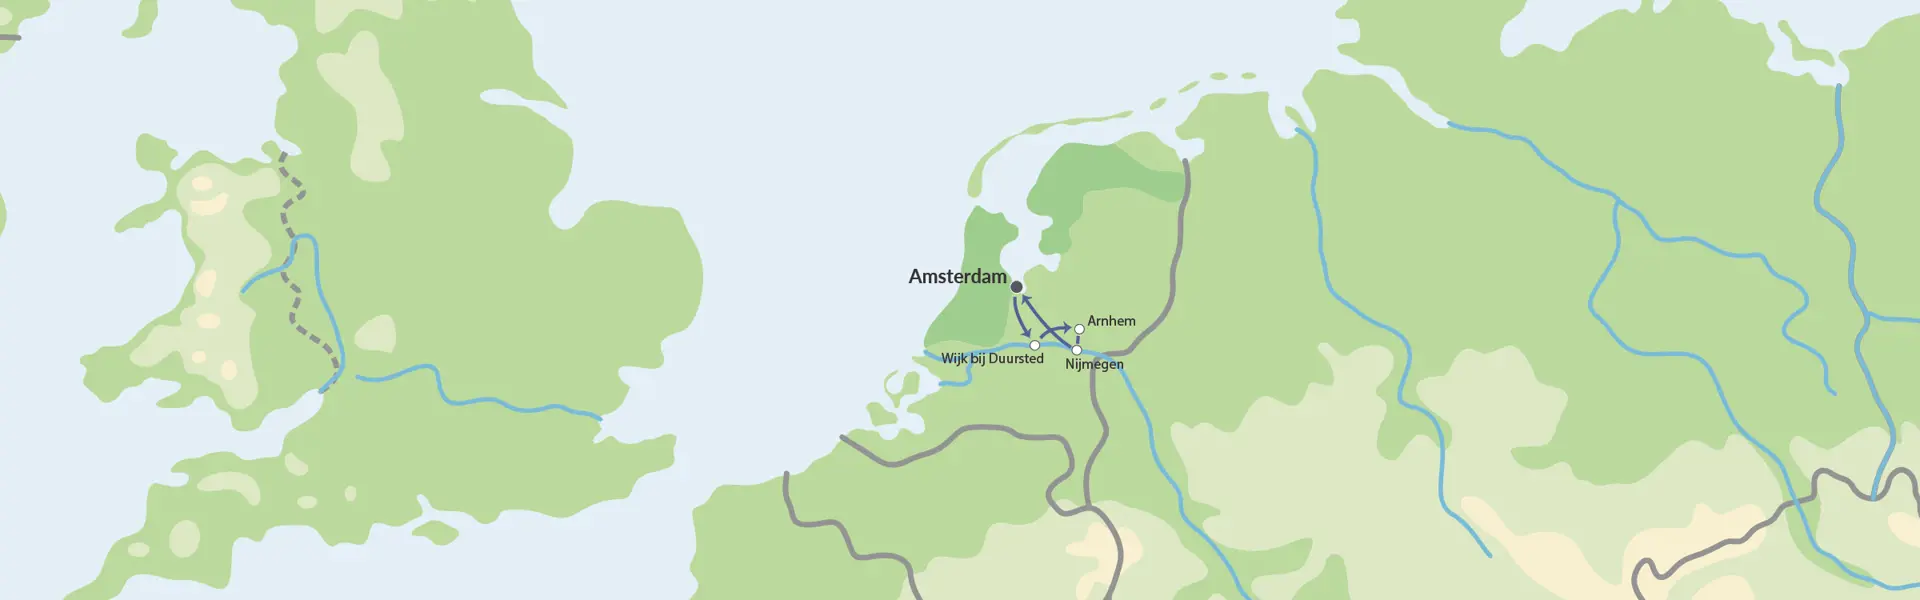 Flodkrydstogt I Holland Map